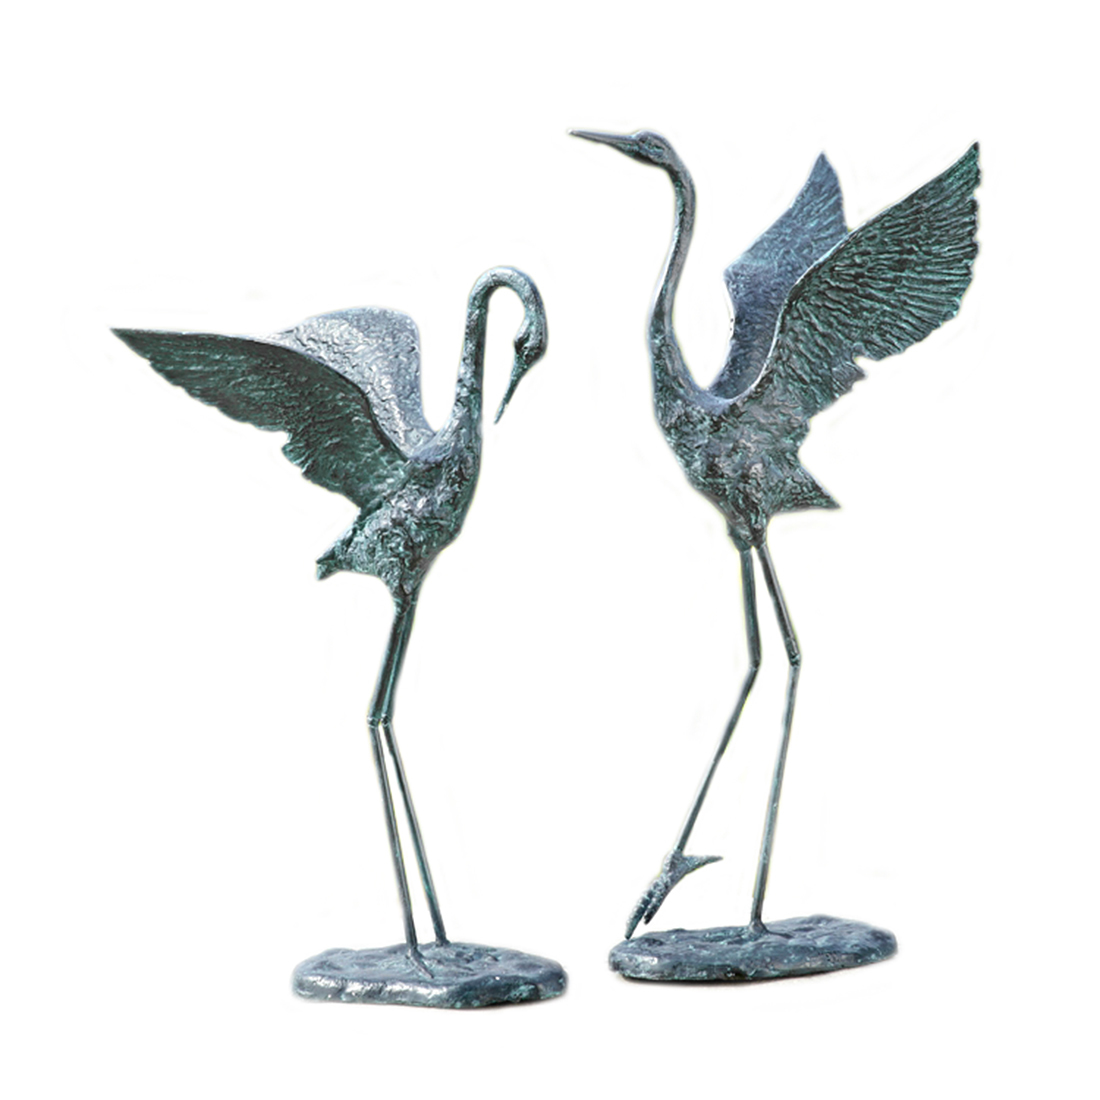 Primary image for Exalted Crane Verdigris Finish Pair of Aluminum Statues